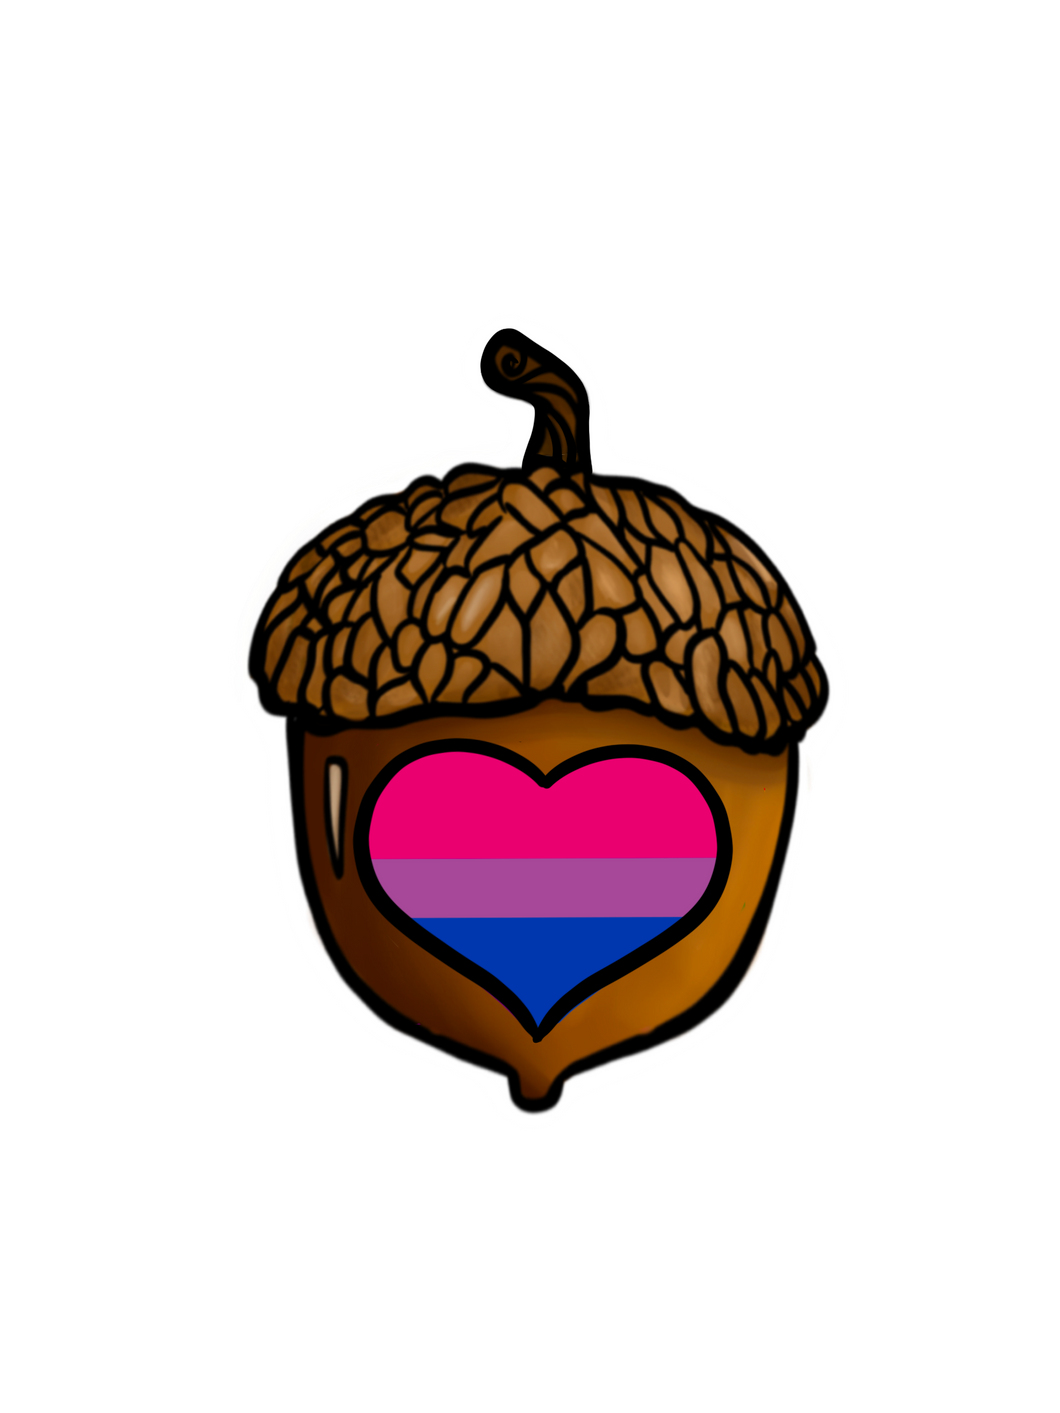 Bisexual Gaycorn Sticker